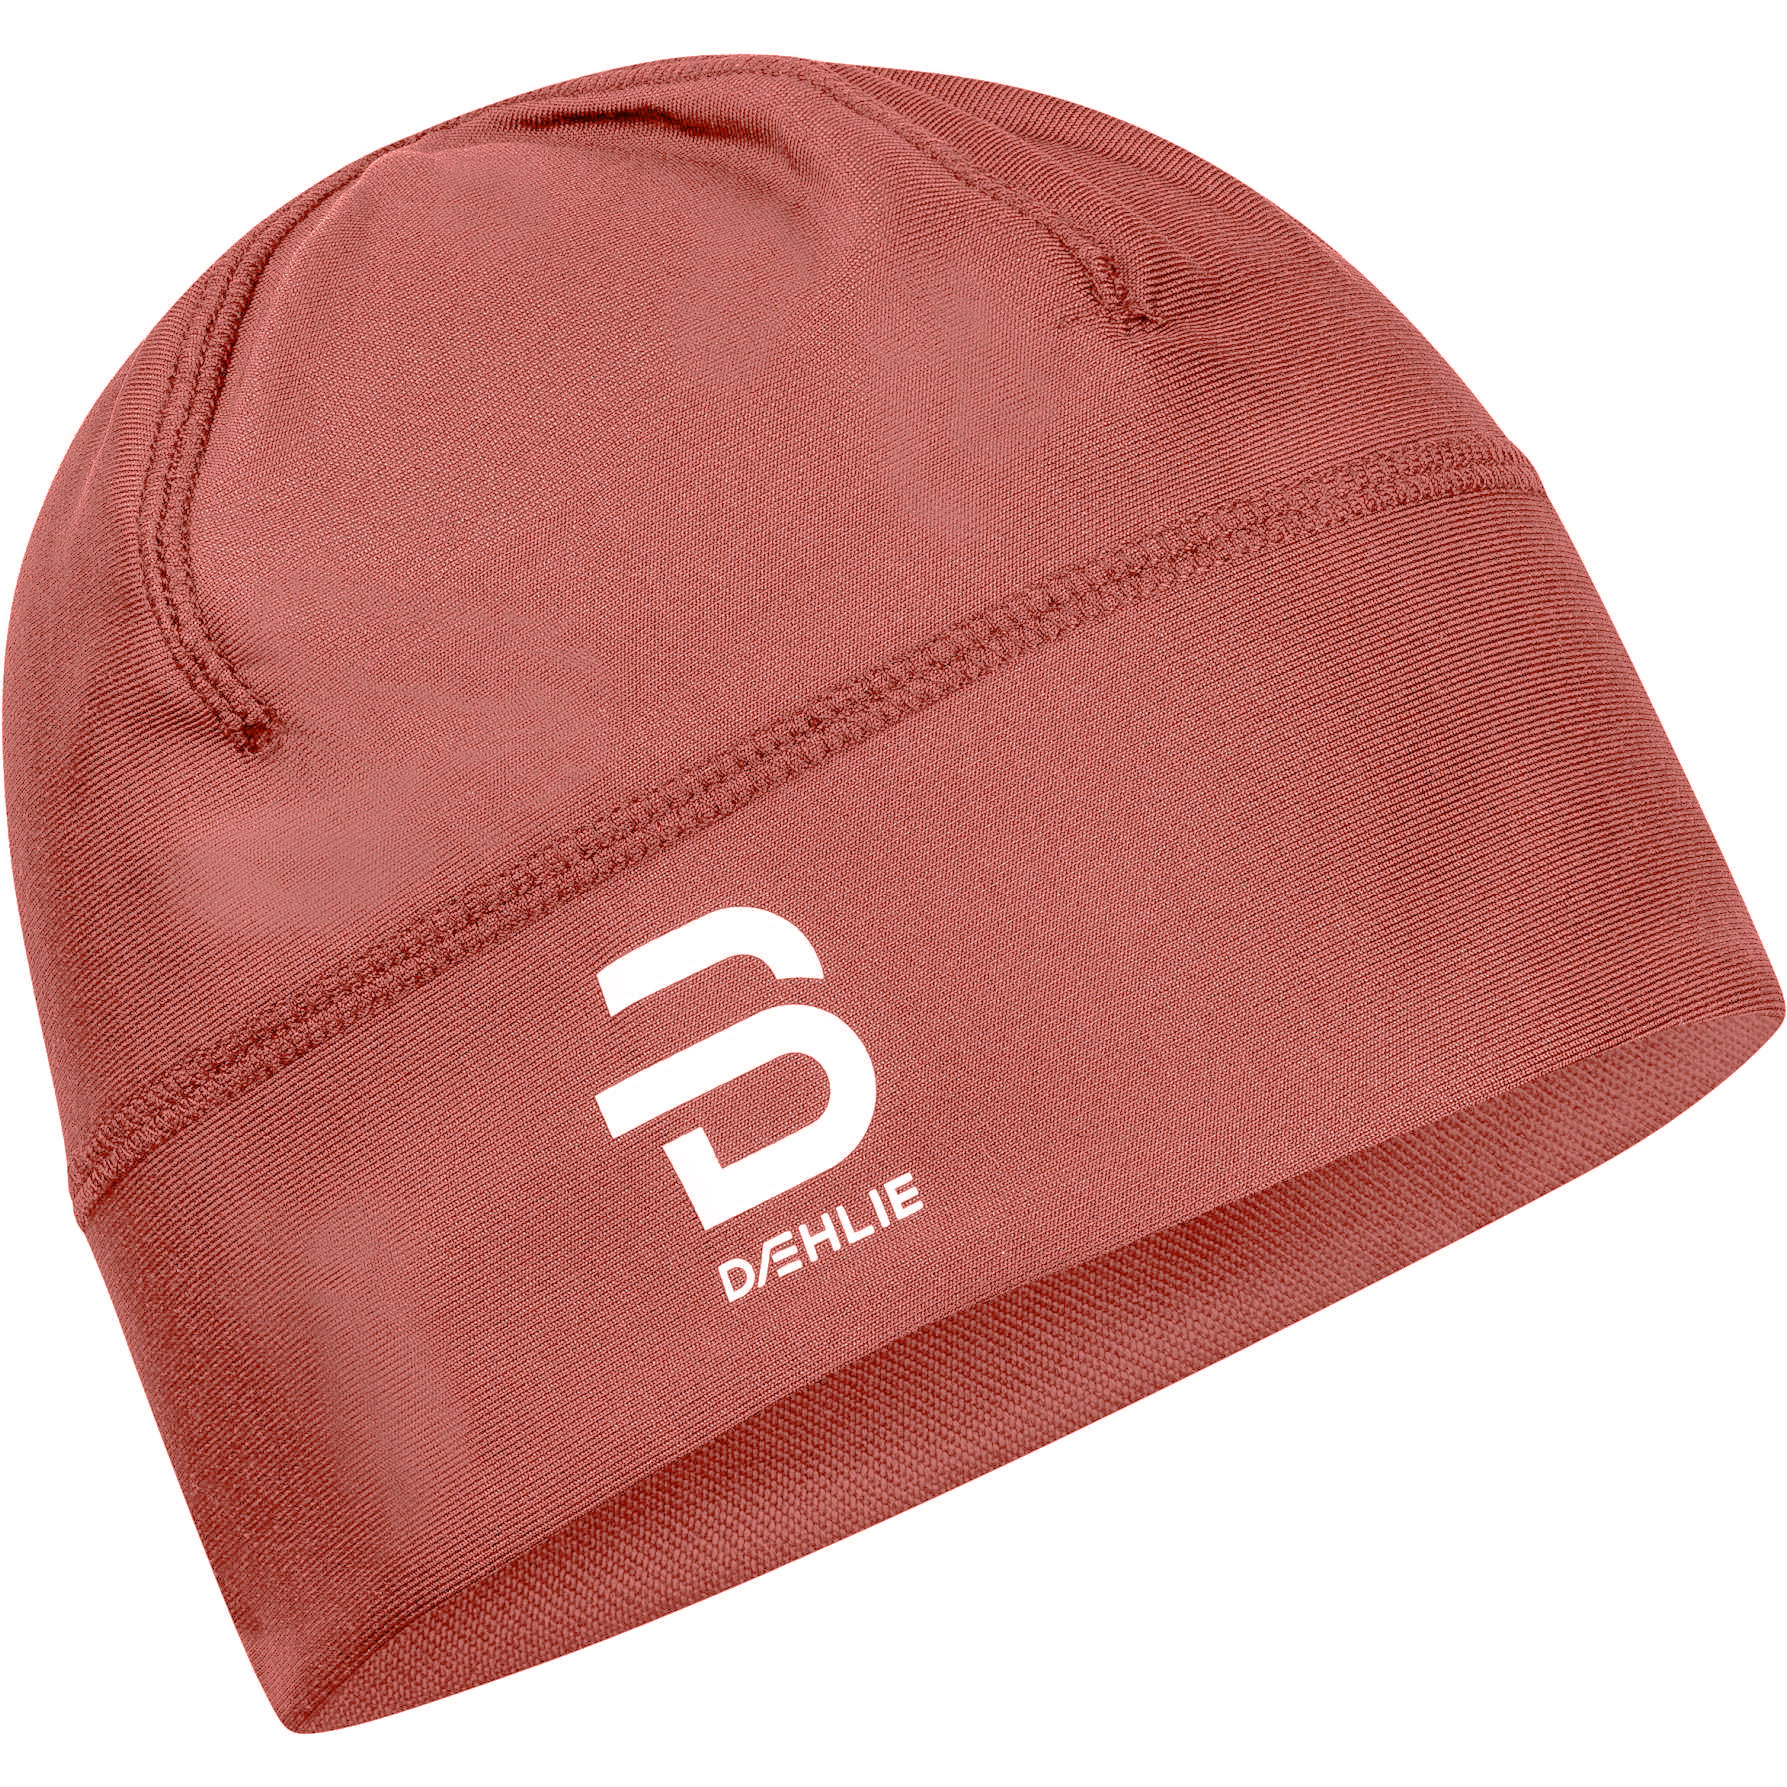 Produktbild von Daehlie Polyknit Mütze - Dusty Red